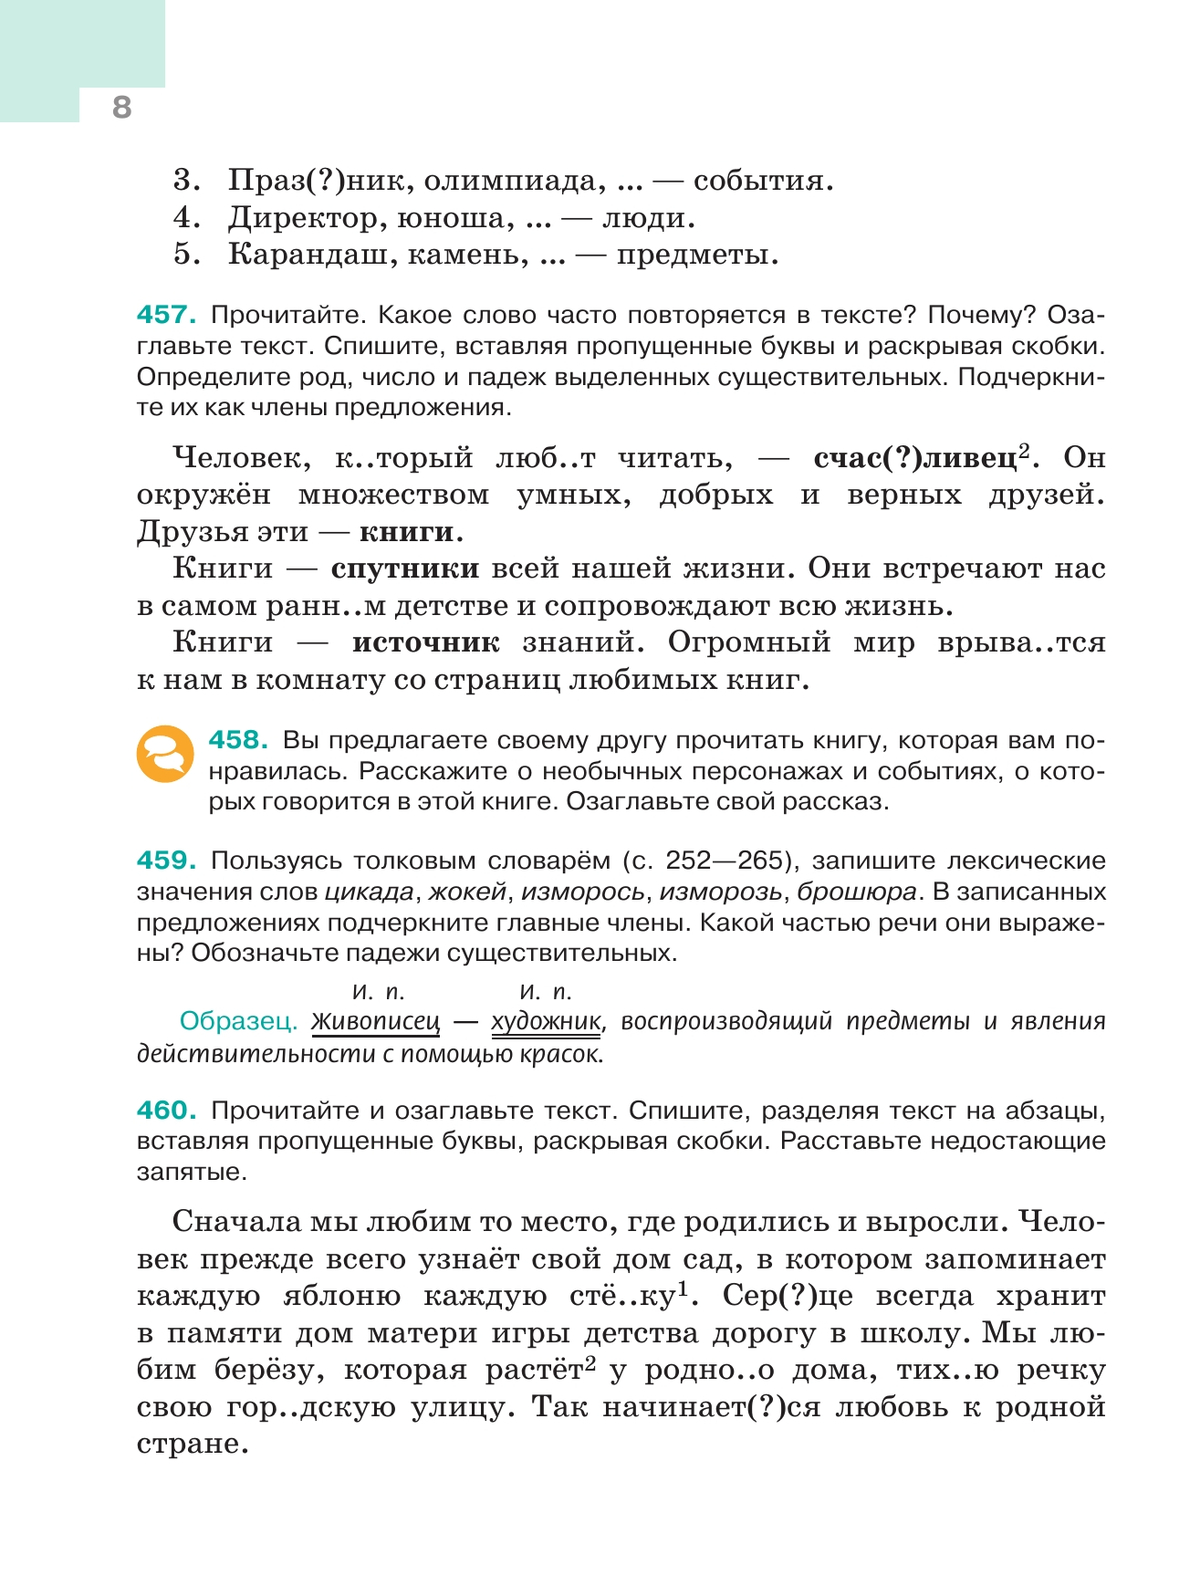 Русский язык. 5 класс. Учебник. В 2-х ч. Ч. 2 6